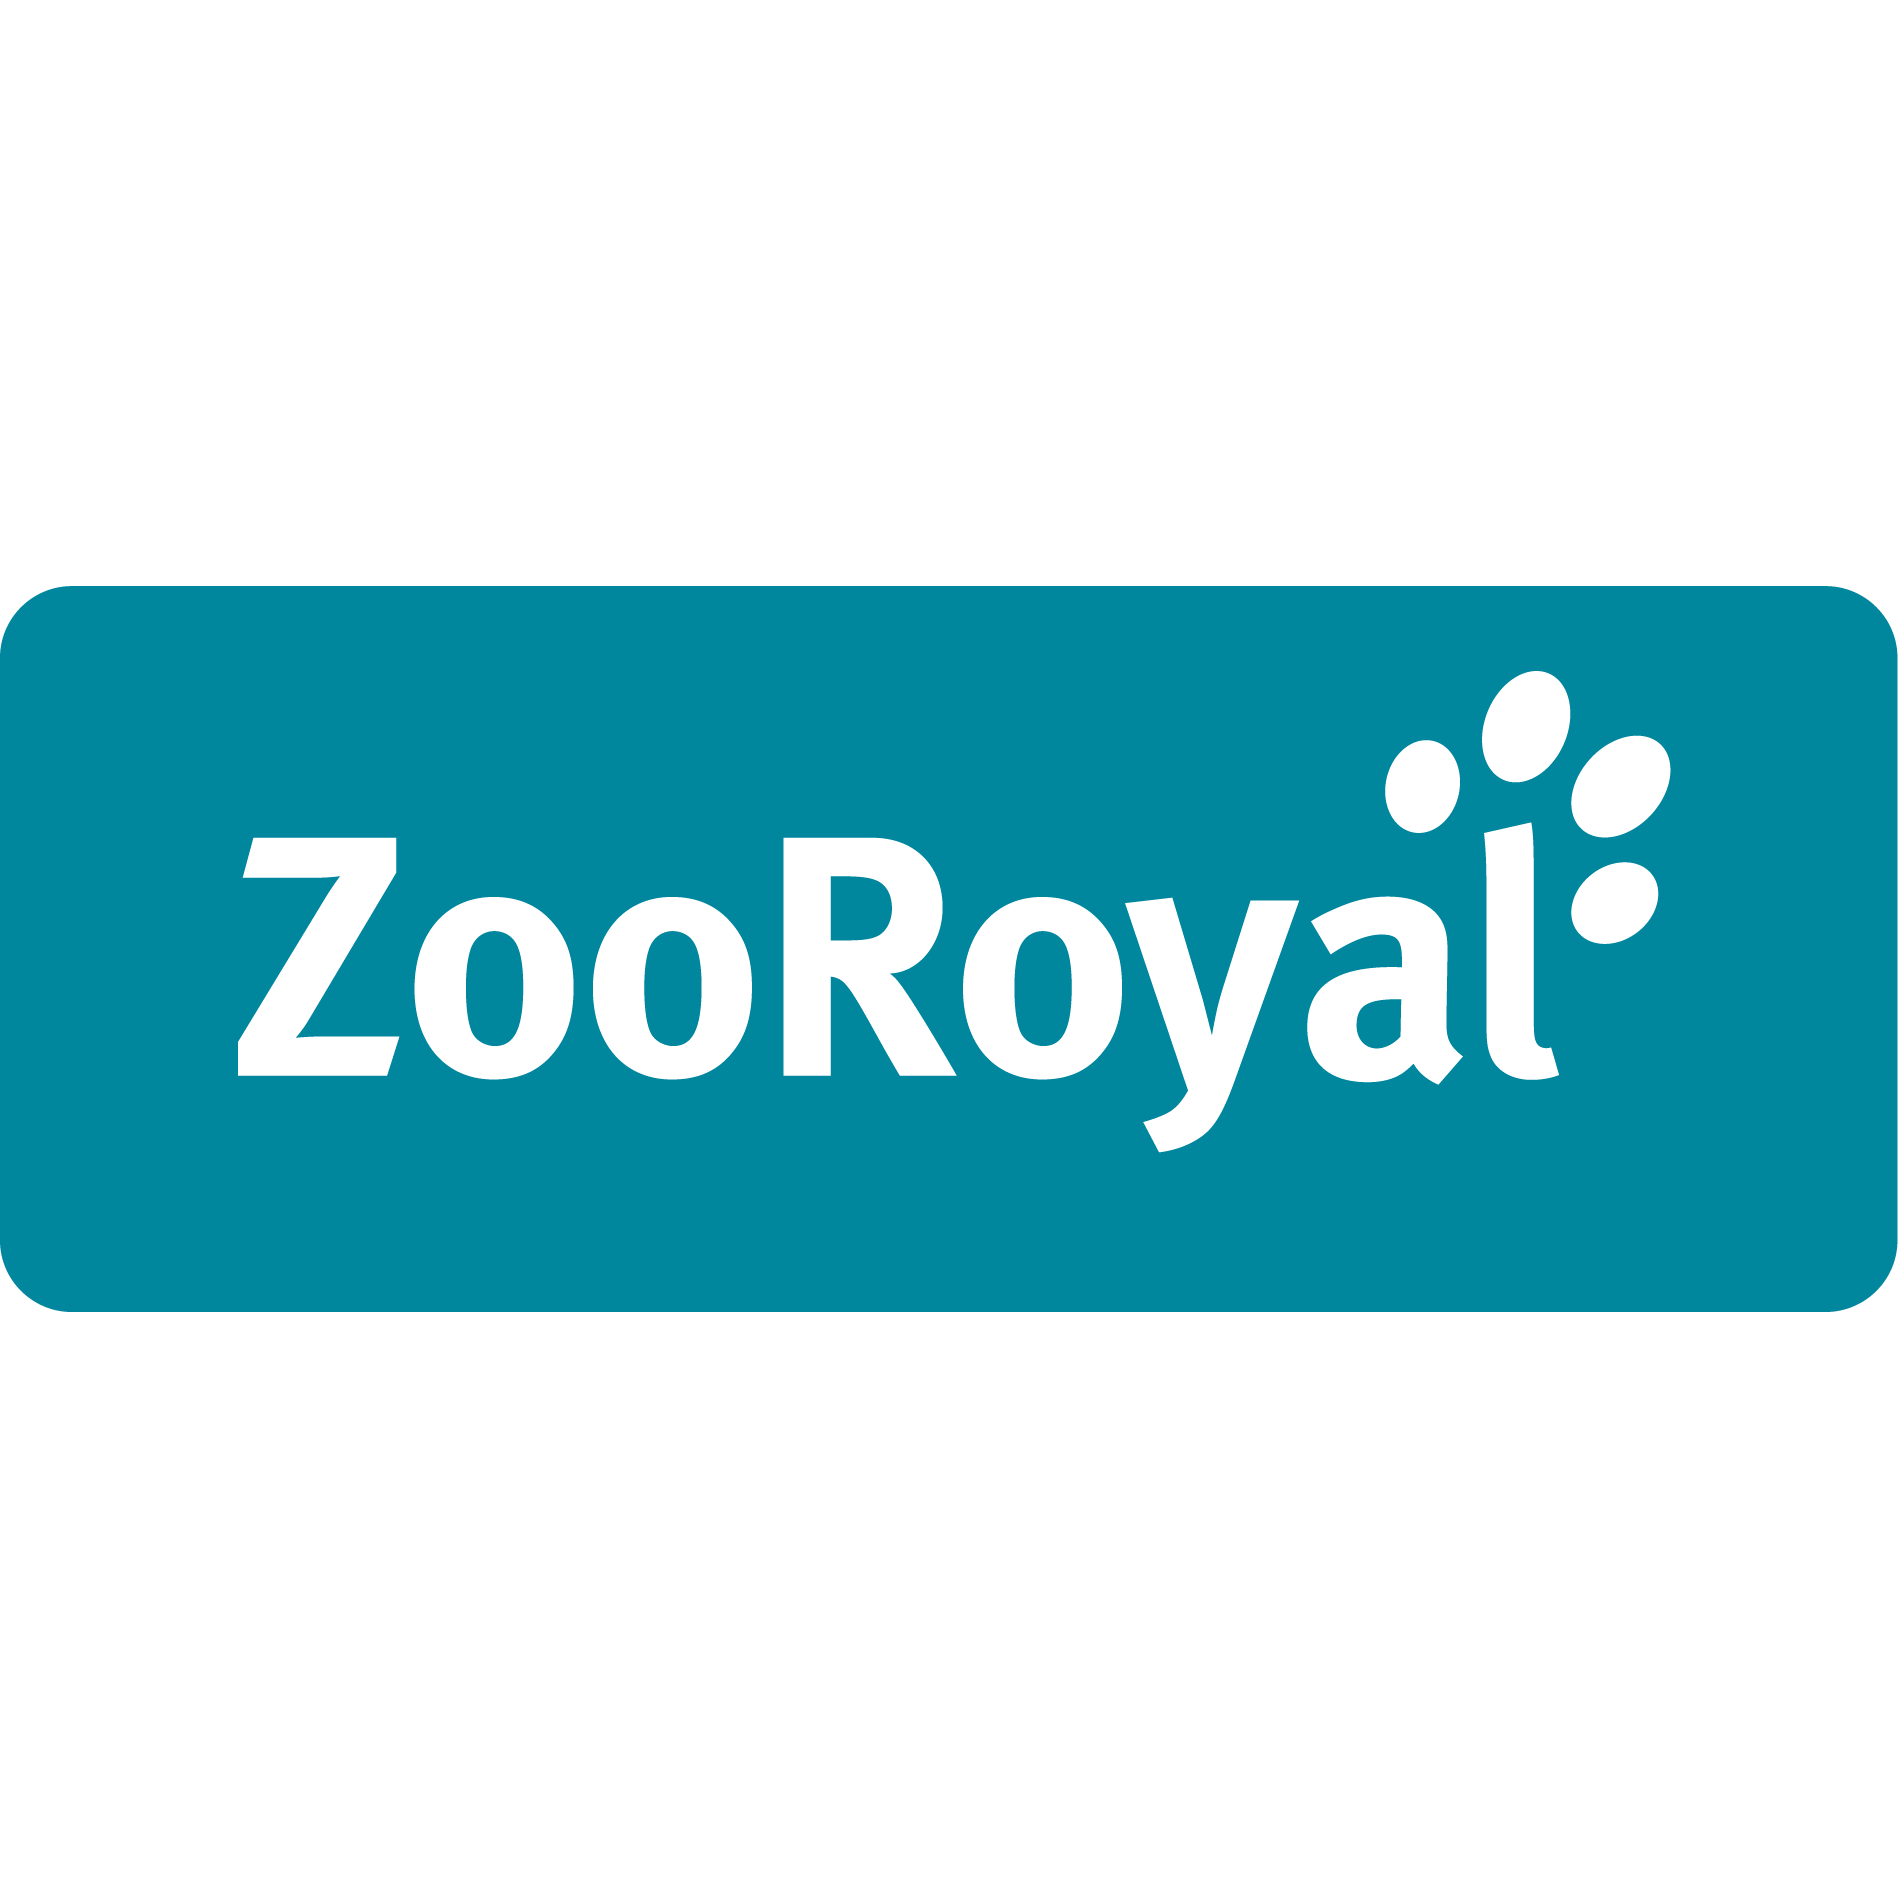 ZooRoyal Logo